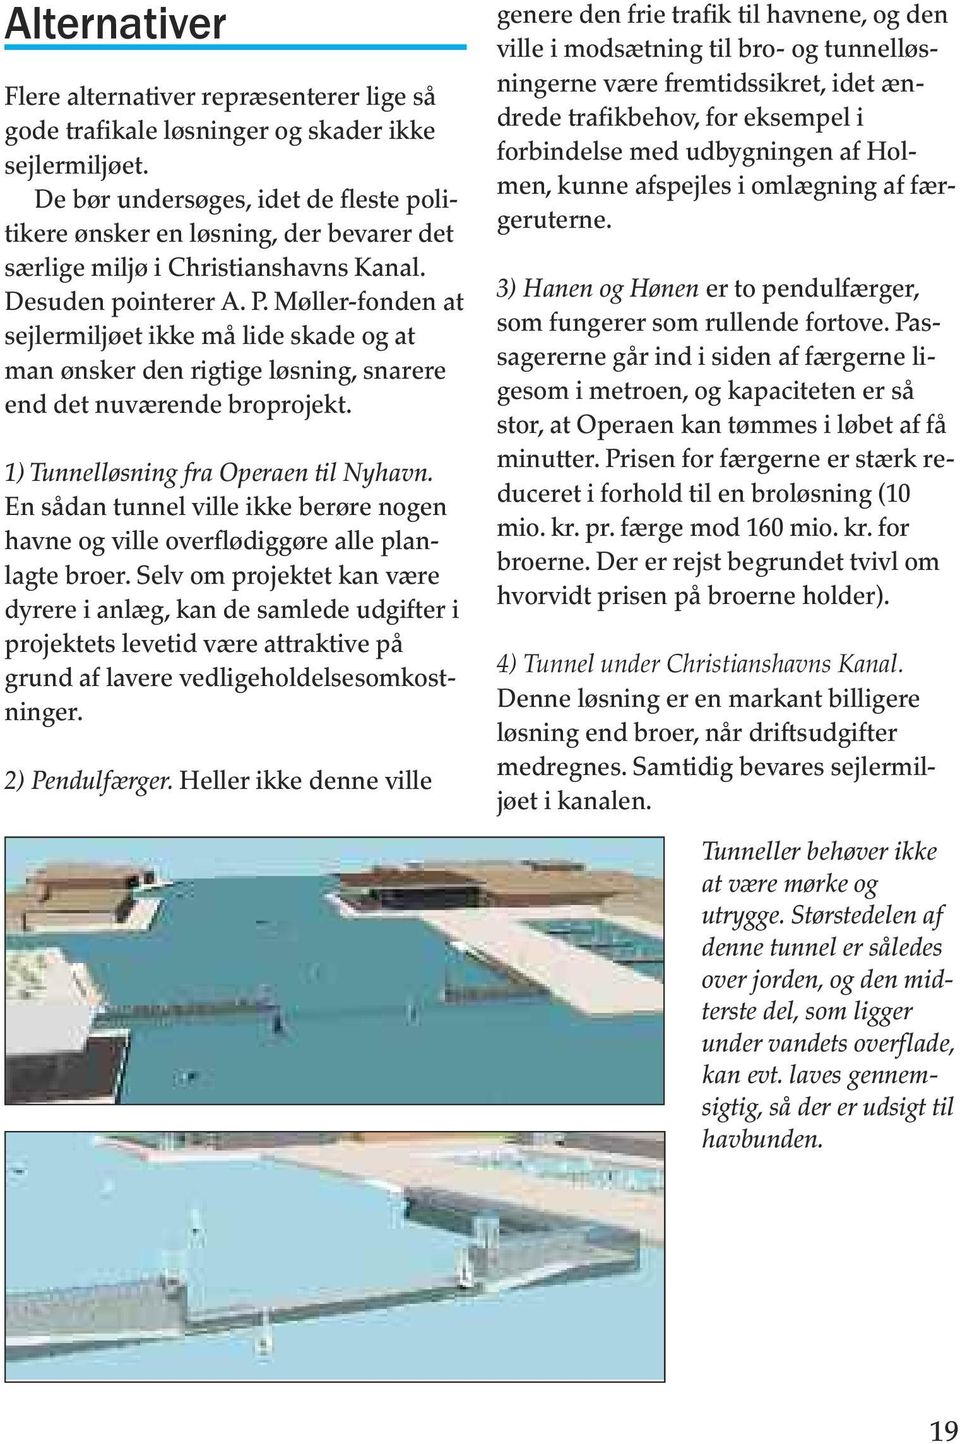 Møller-fonden at sejlermiljøet ikke må lide skade og at man ønsker den rigtige løsning, snarere end det nuværende broprojekt. 1) Tunnelløsning fra Operaen til Nyhavn.